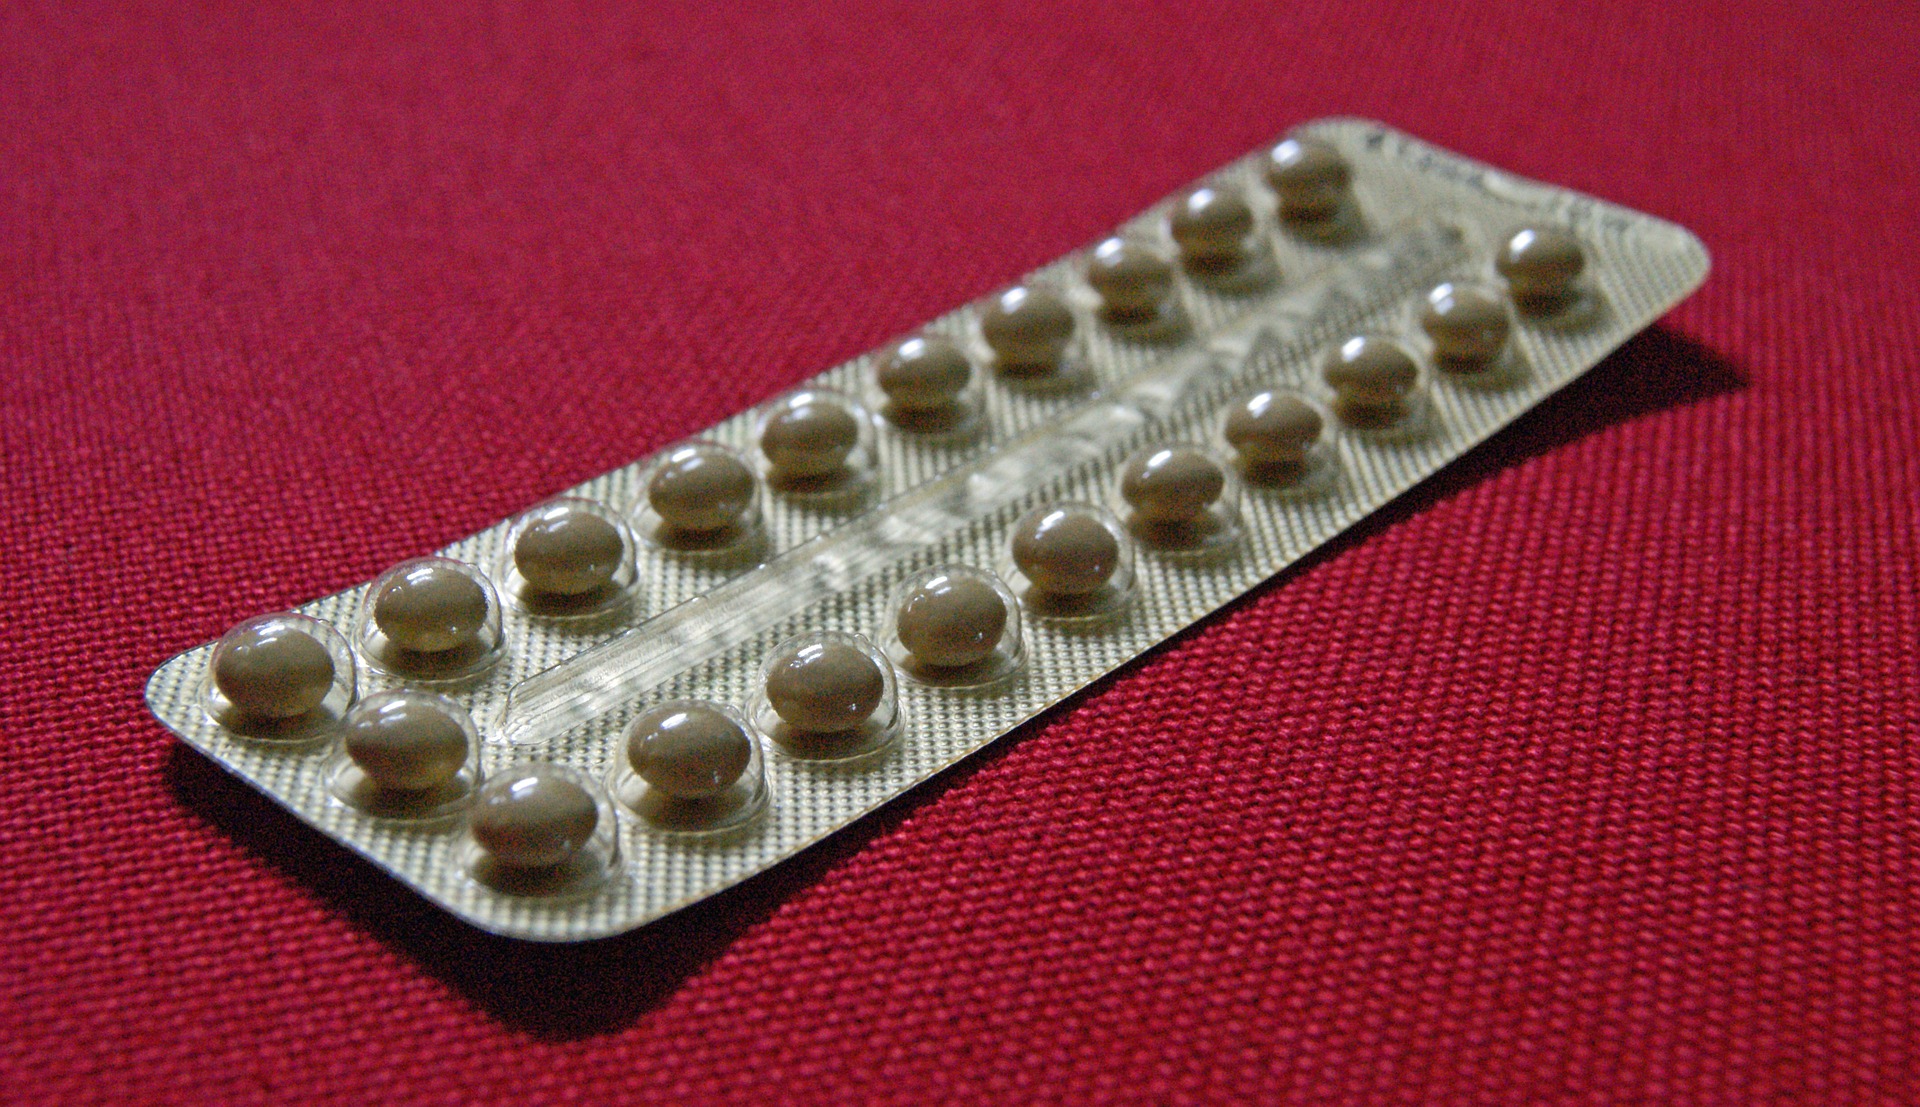 Жените, които избират противозачатъчните хапчета като контрацепция, често се интересуват